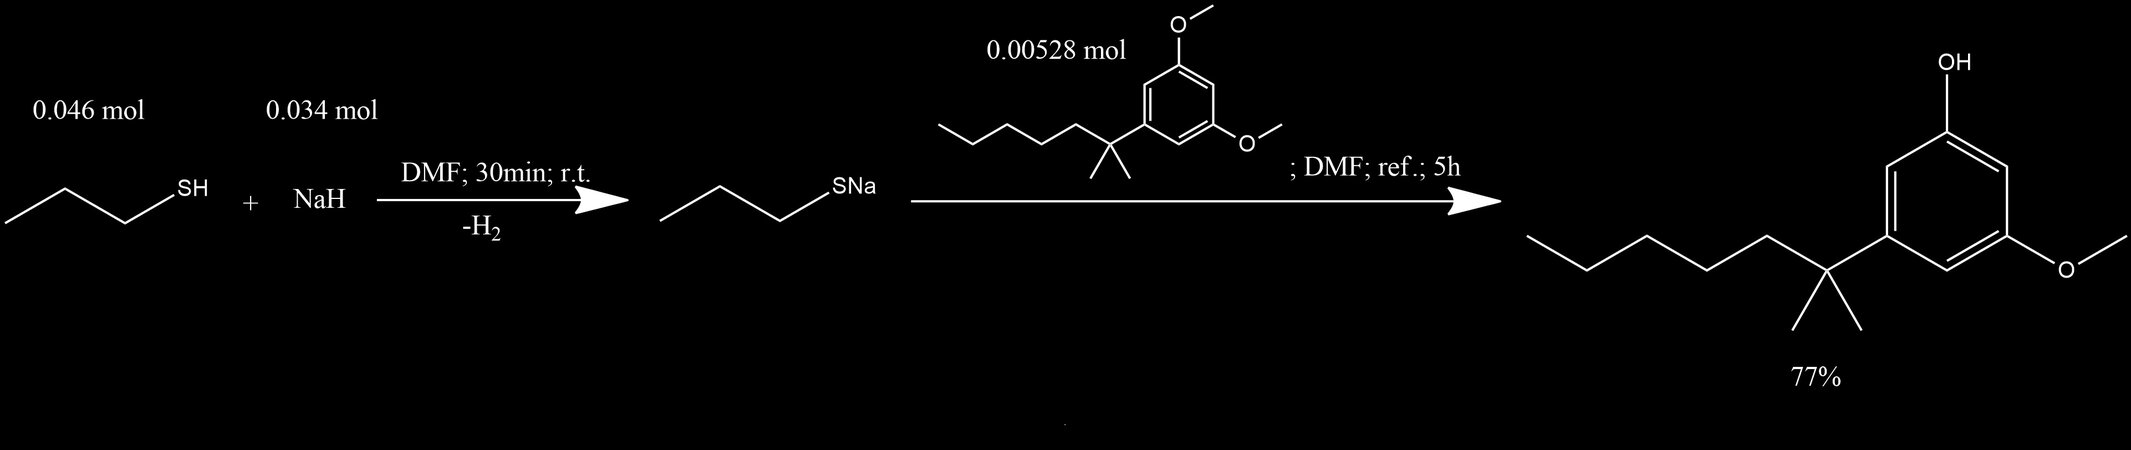 Synthesis of СР-47,497 - 2-3-methoxy-5-hydroxyphenyl-2-methylheptane.jpg